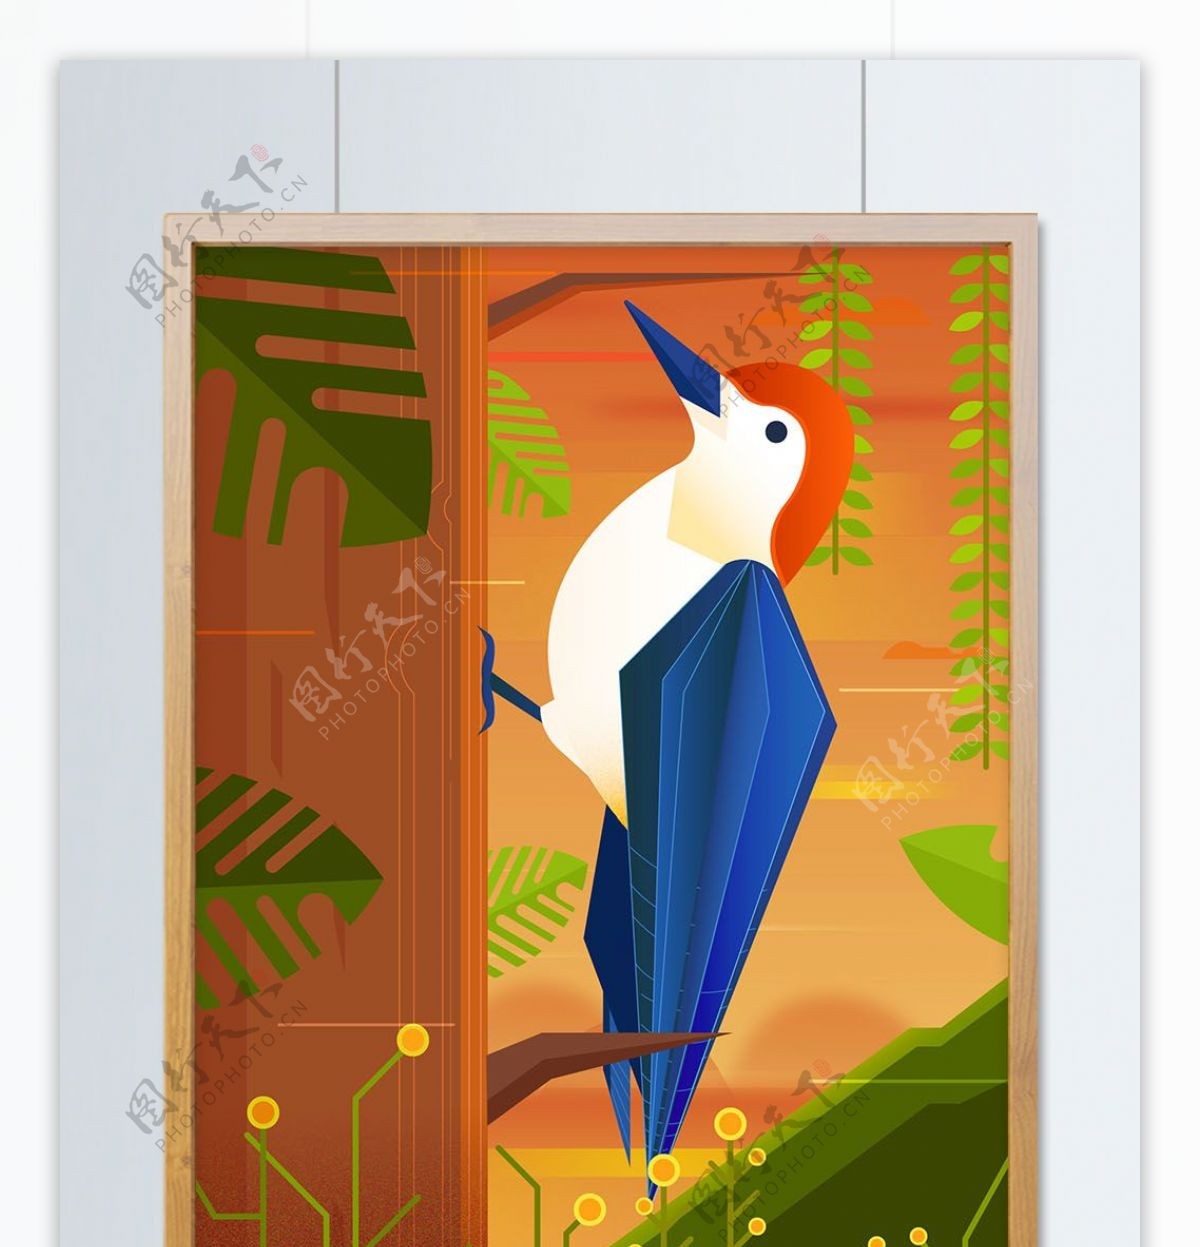 大自然动物森林黄昏下的啄木鸟矢量插画